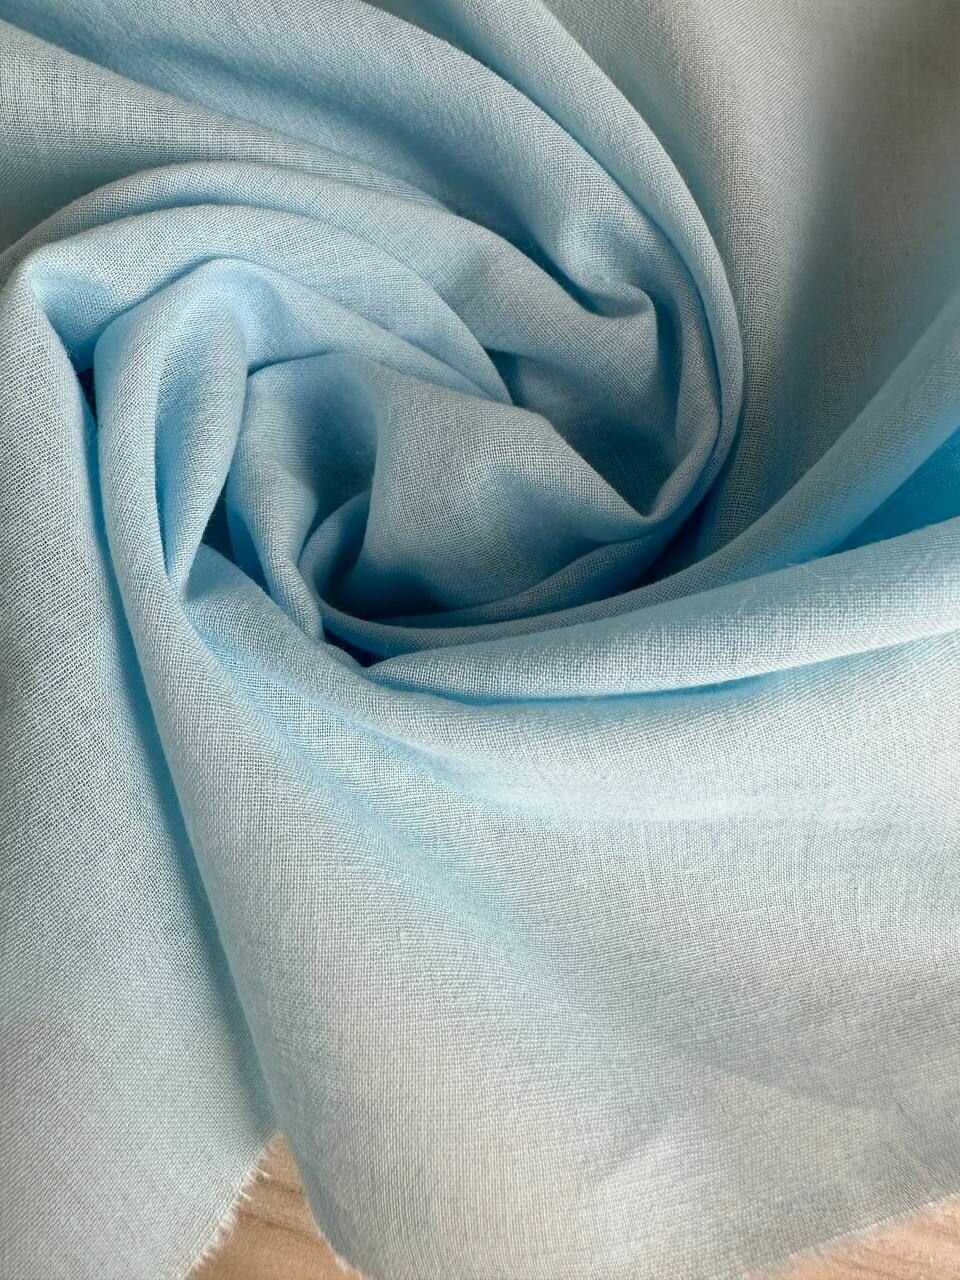 1 м Батист ткань для шитья одежды 100% хлопок. Подкладочная ткань под прошву цвет голубой  ширина 150см.